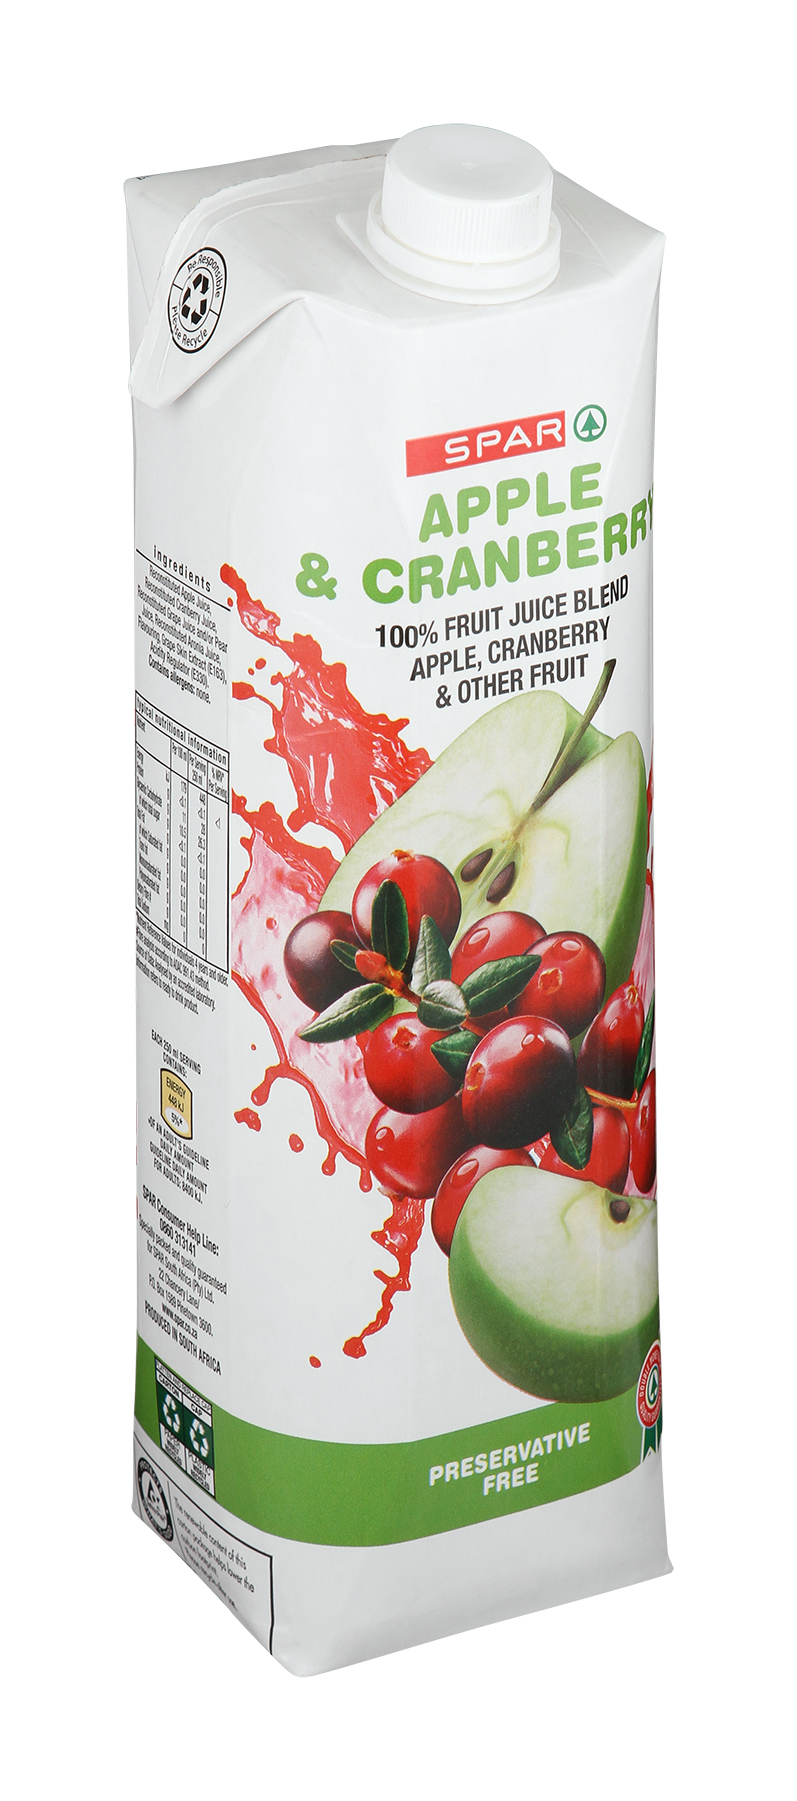 100% fruit juice blend - apple & cranberry